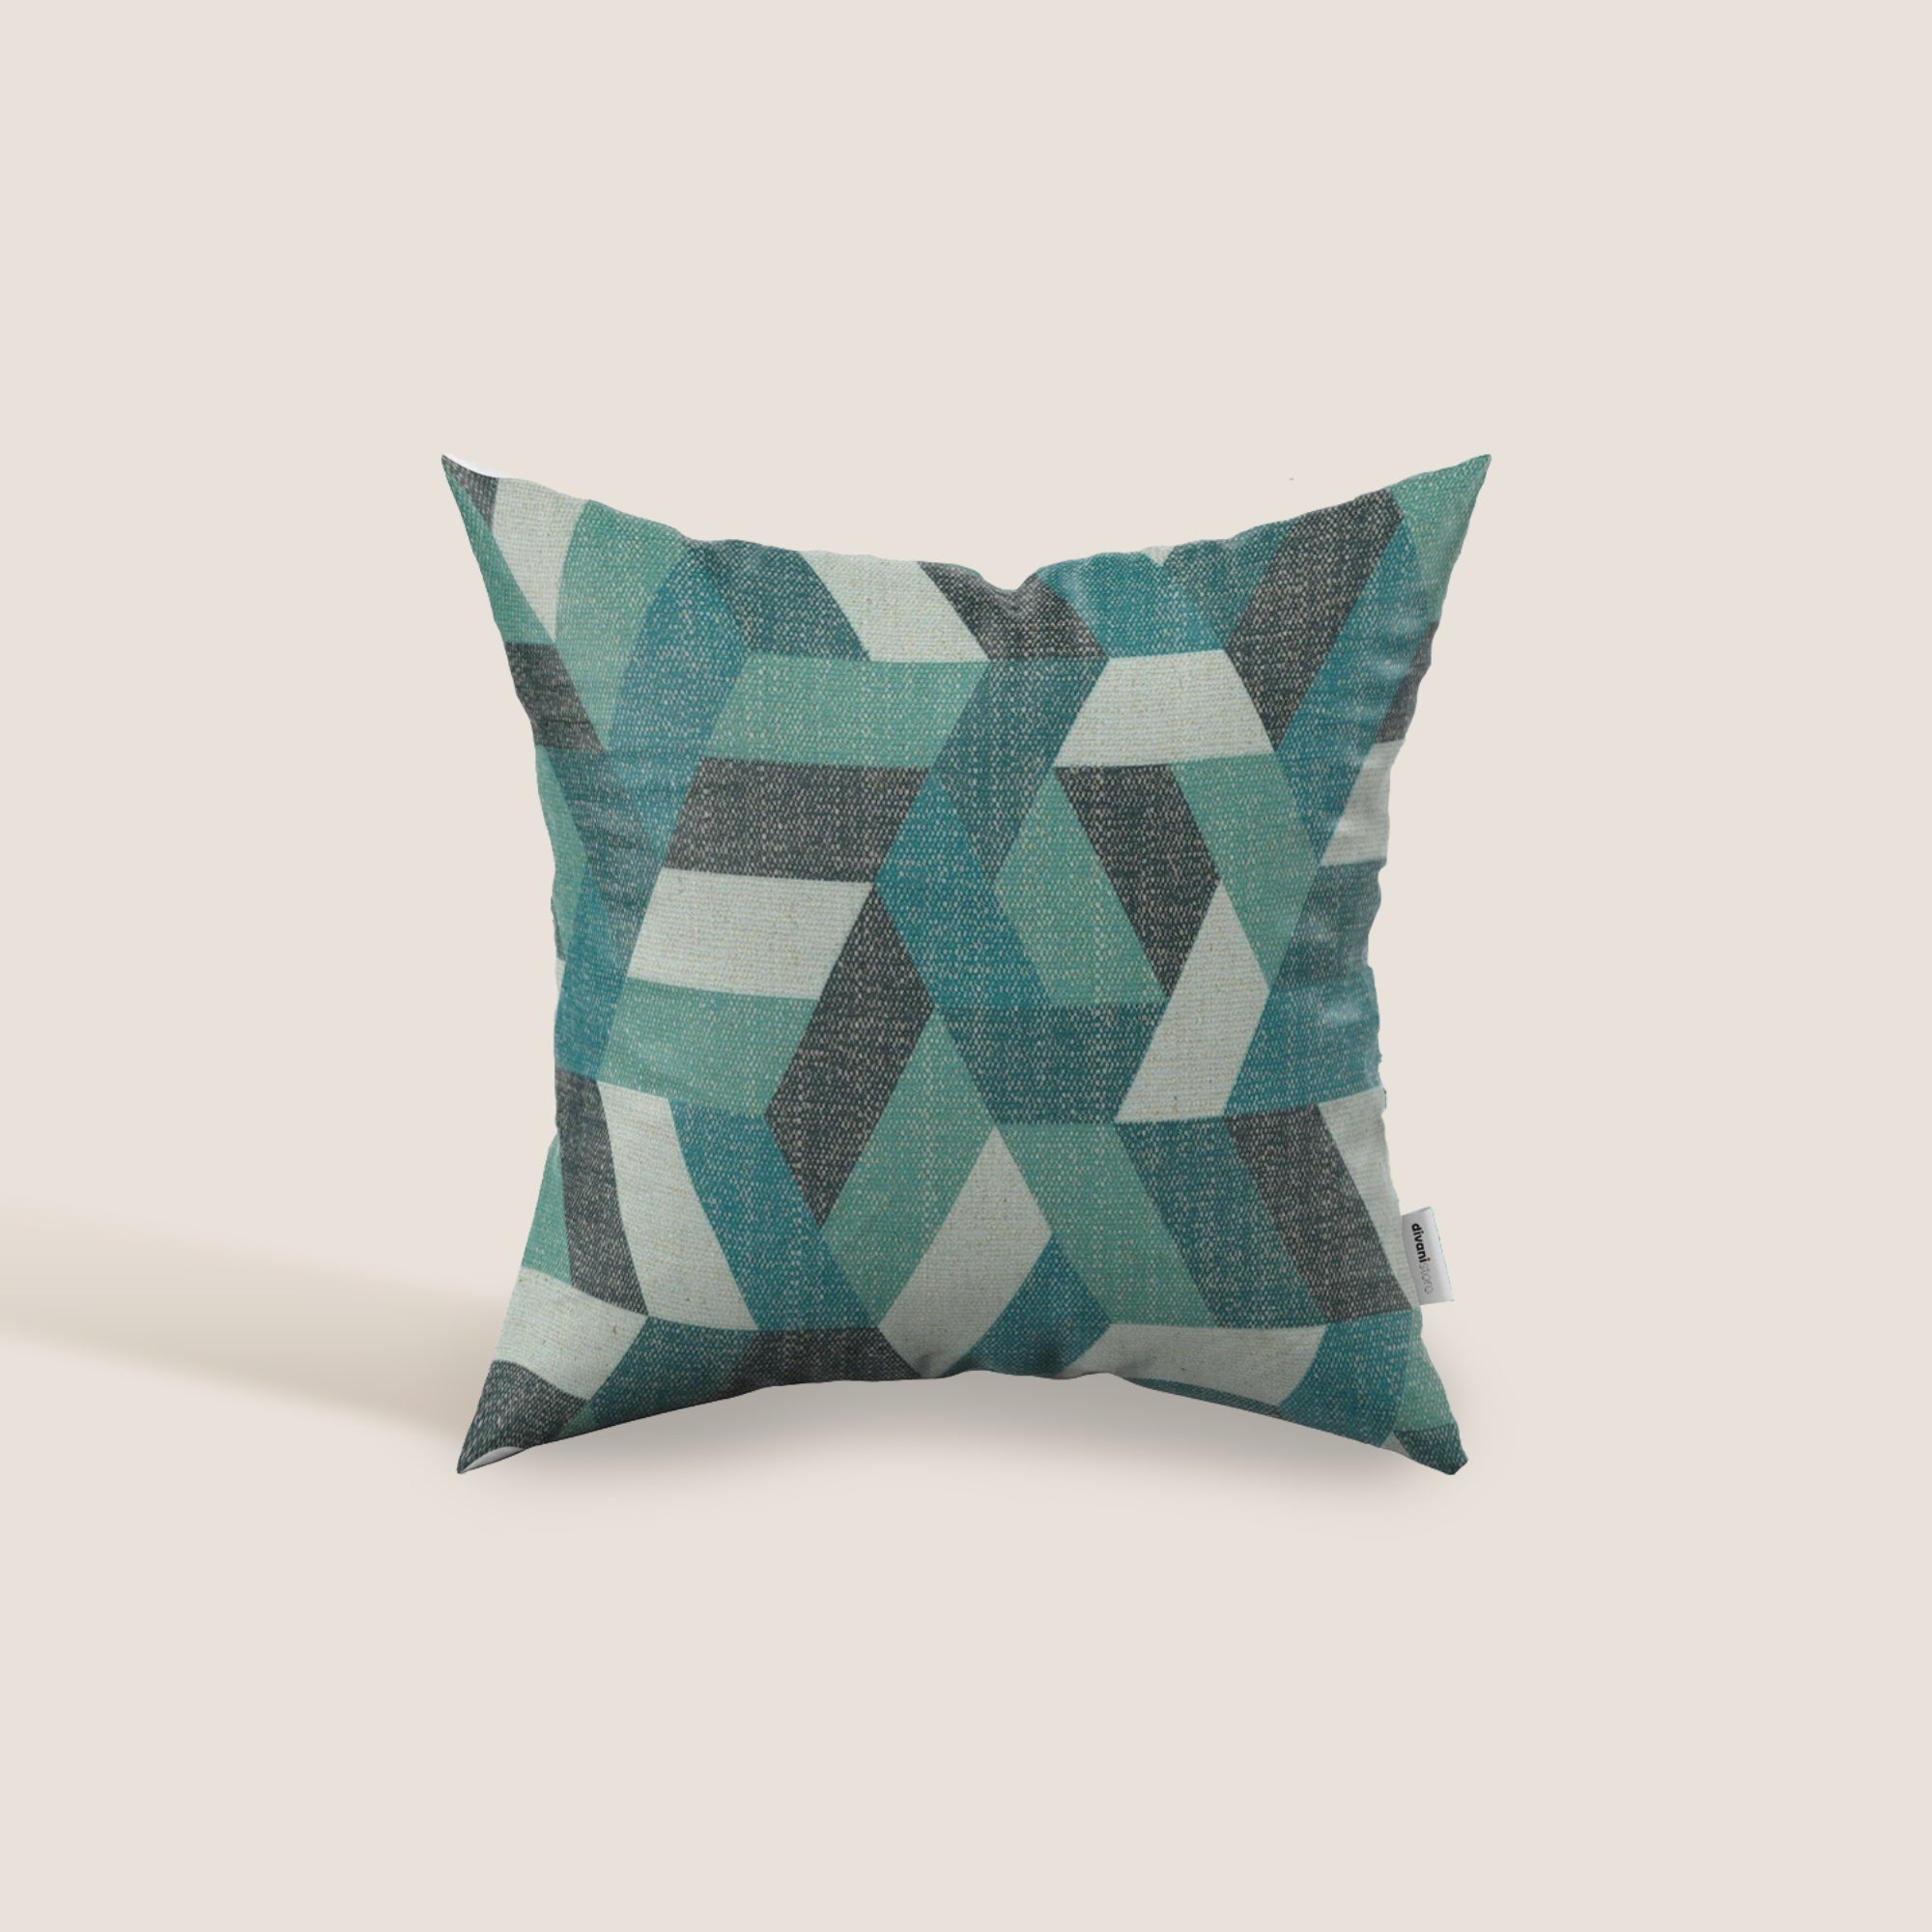 Unreal cuscini a fantasia geometriche in tessuto idrorepellente disponibile in diverse colorazioni